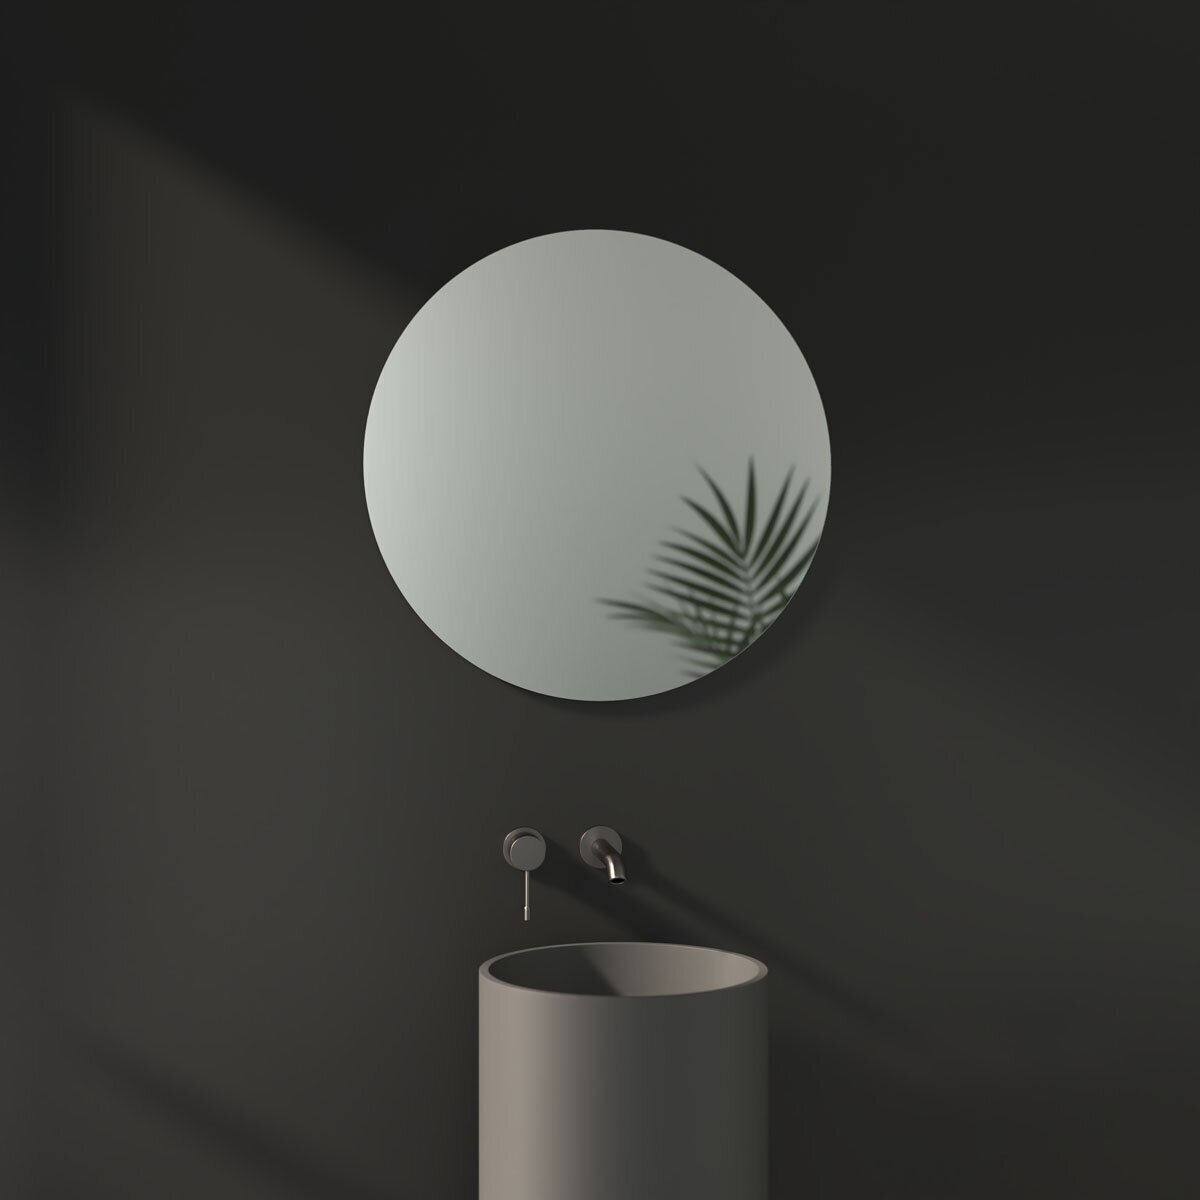 Зеркало настенное Круглое EDGE EVOFORM D70 см, для гостиной, прихожей, спальни, кабинета и ванной комнаты, SP 9957